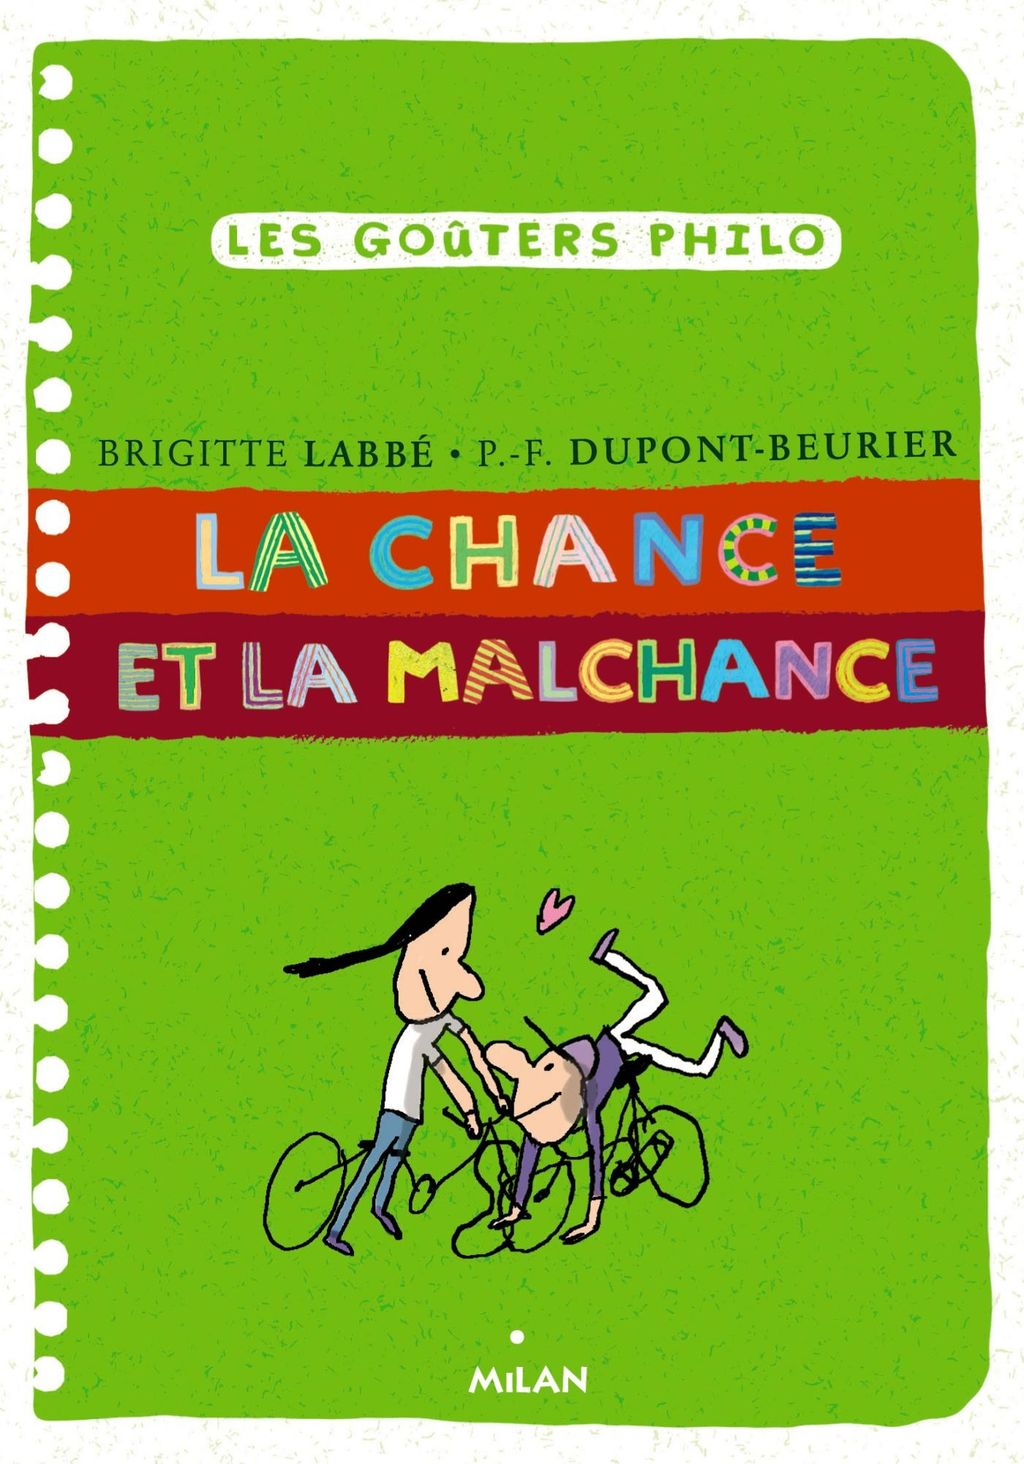 « La chance et la malchance » cover